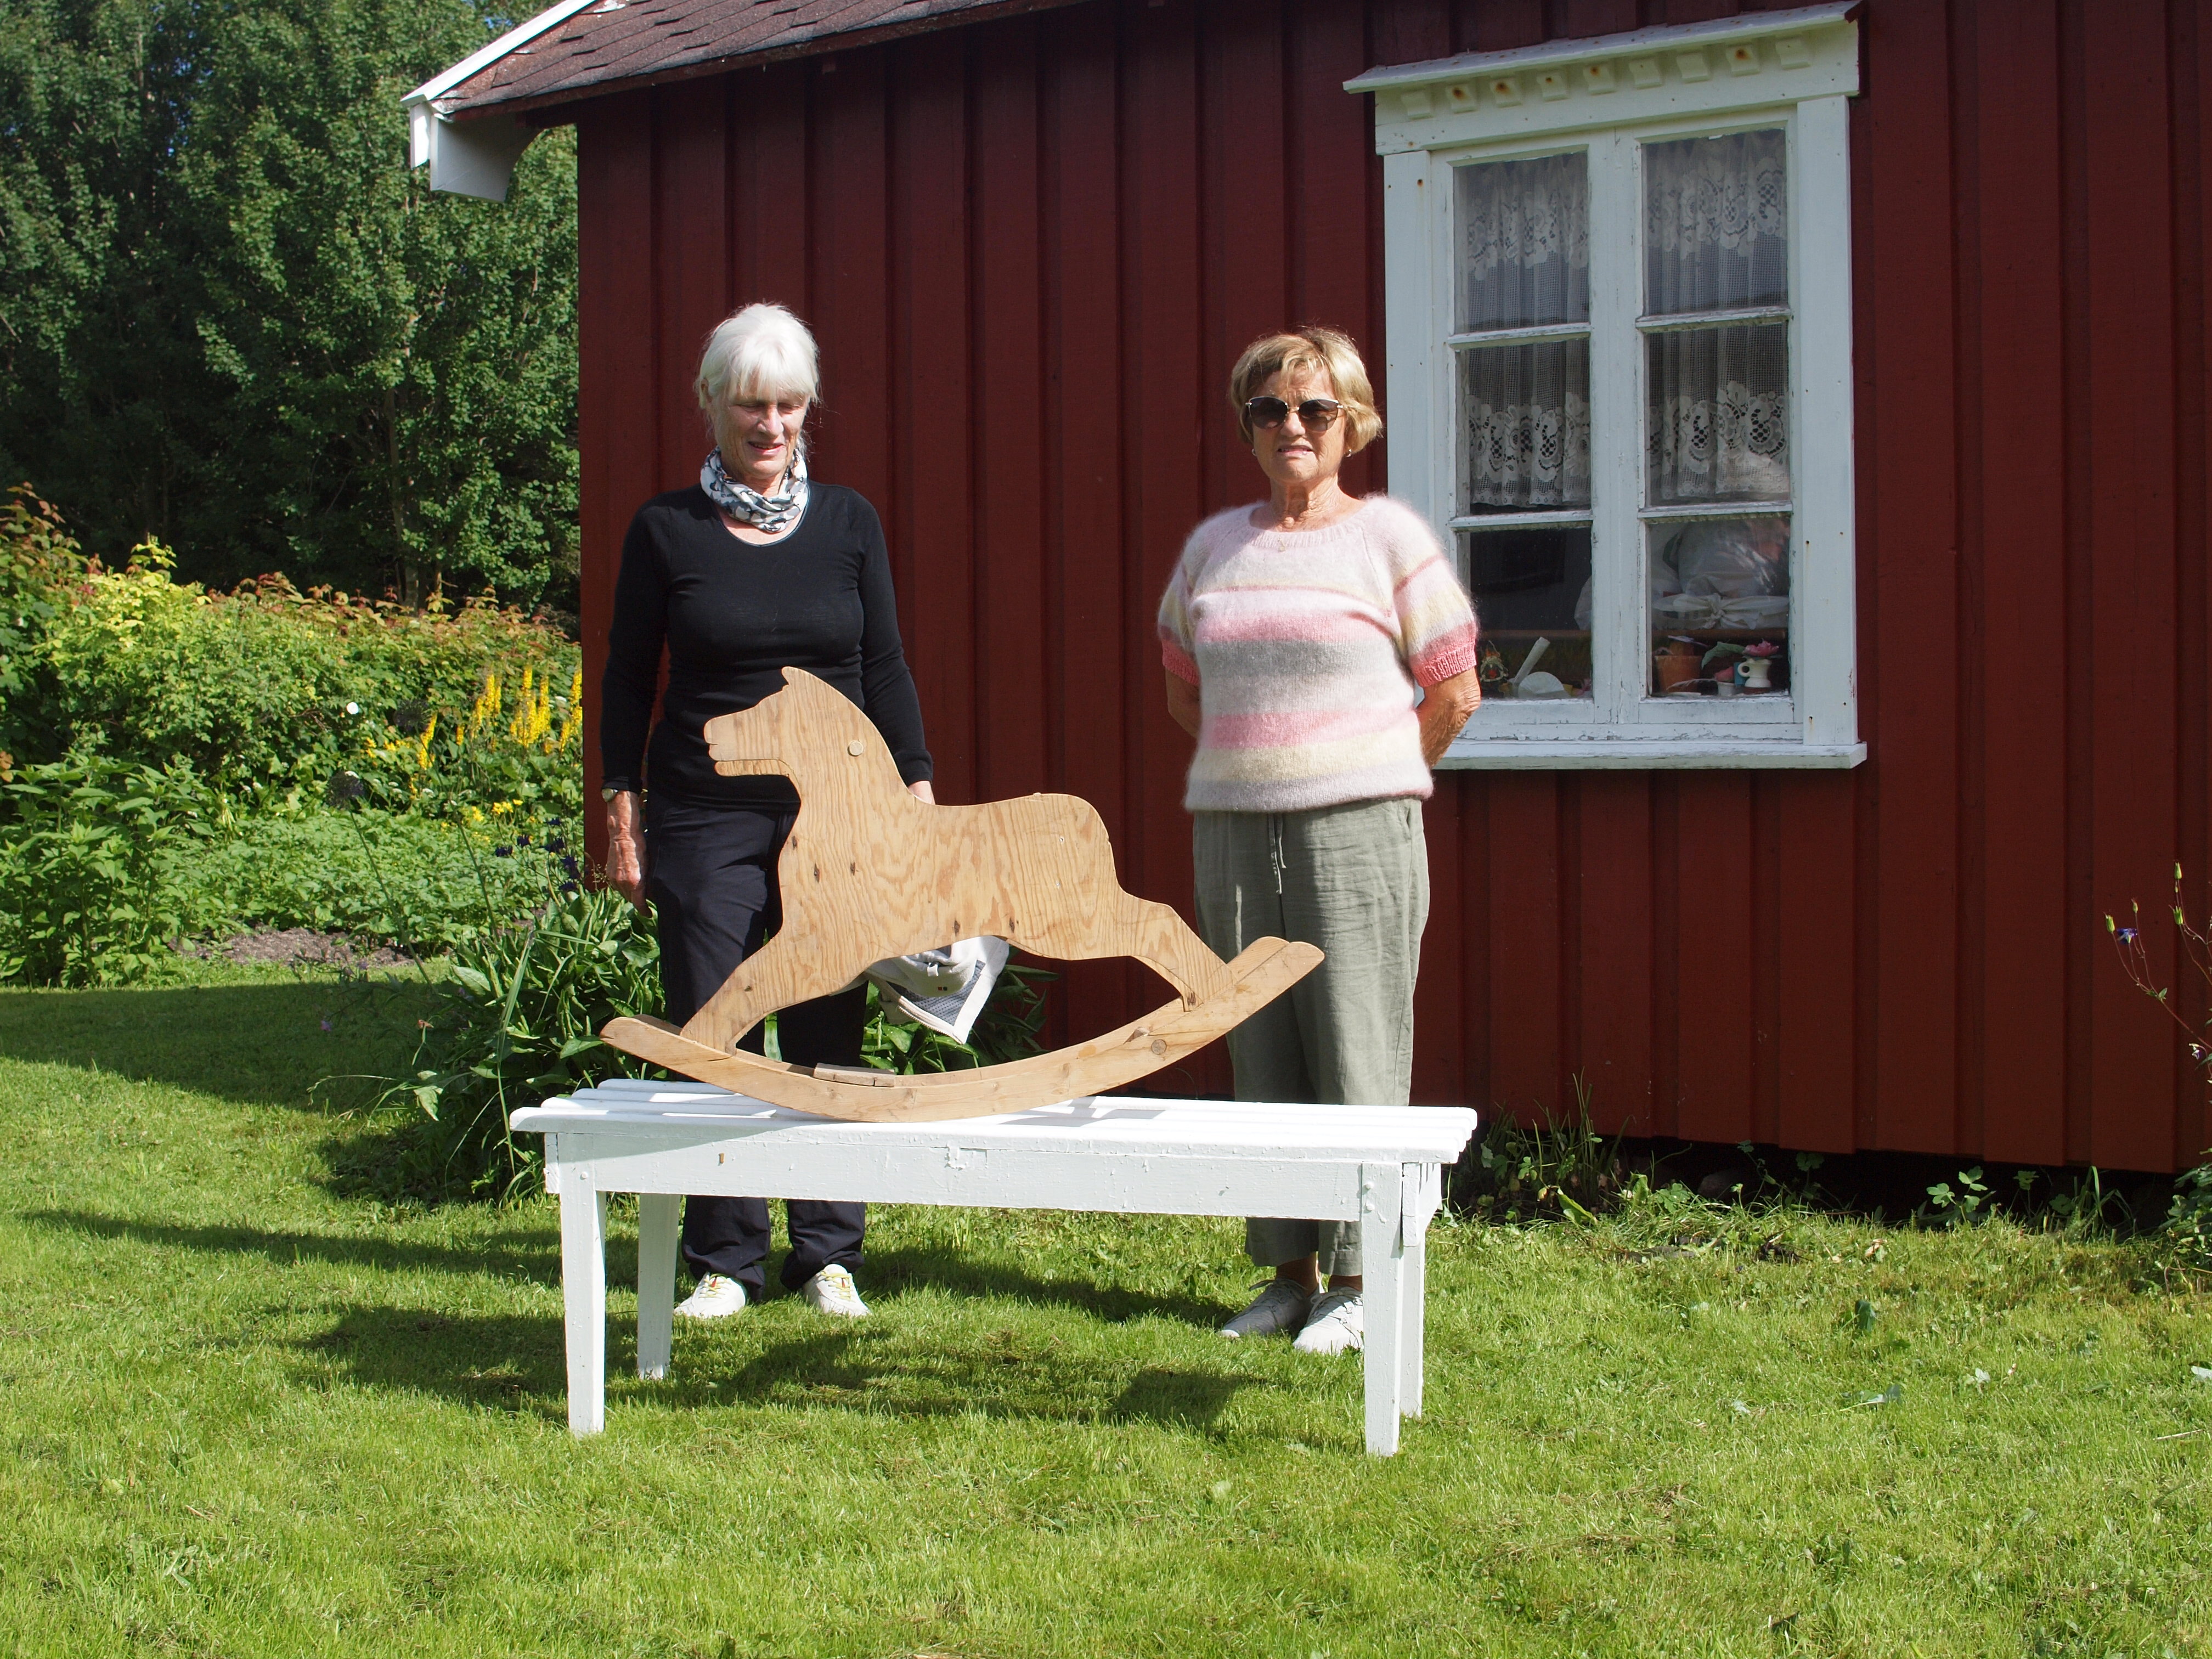 Dagrunn Grønbech og Gerd G. Sjåvik med gyngehesten foran lekestua i barndomshagen på Tenna.